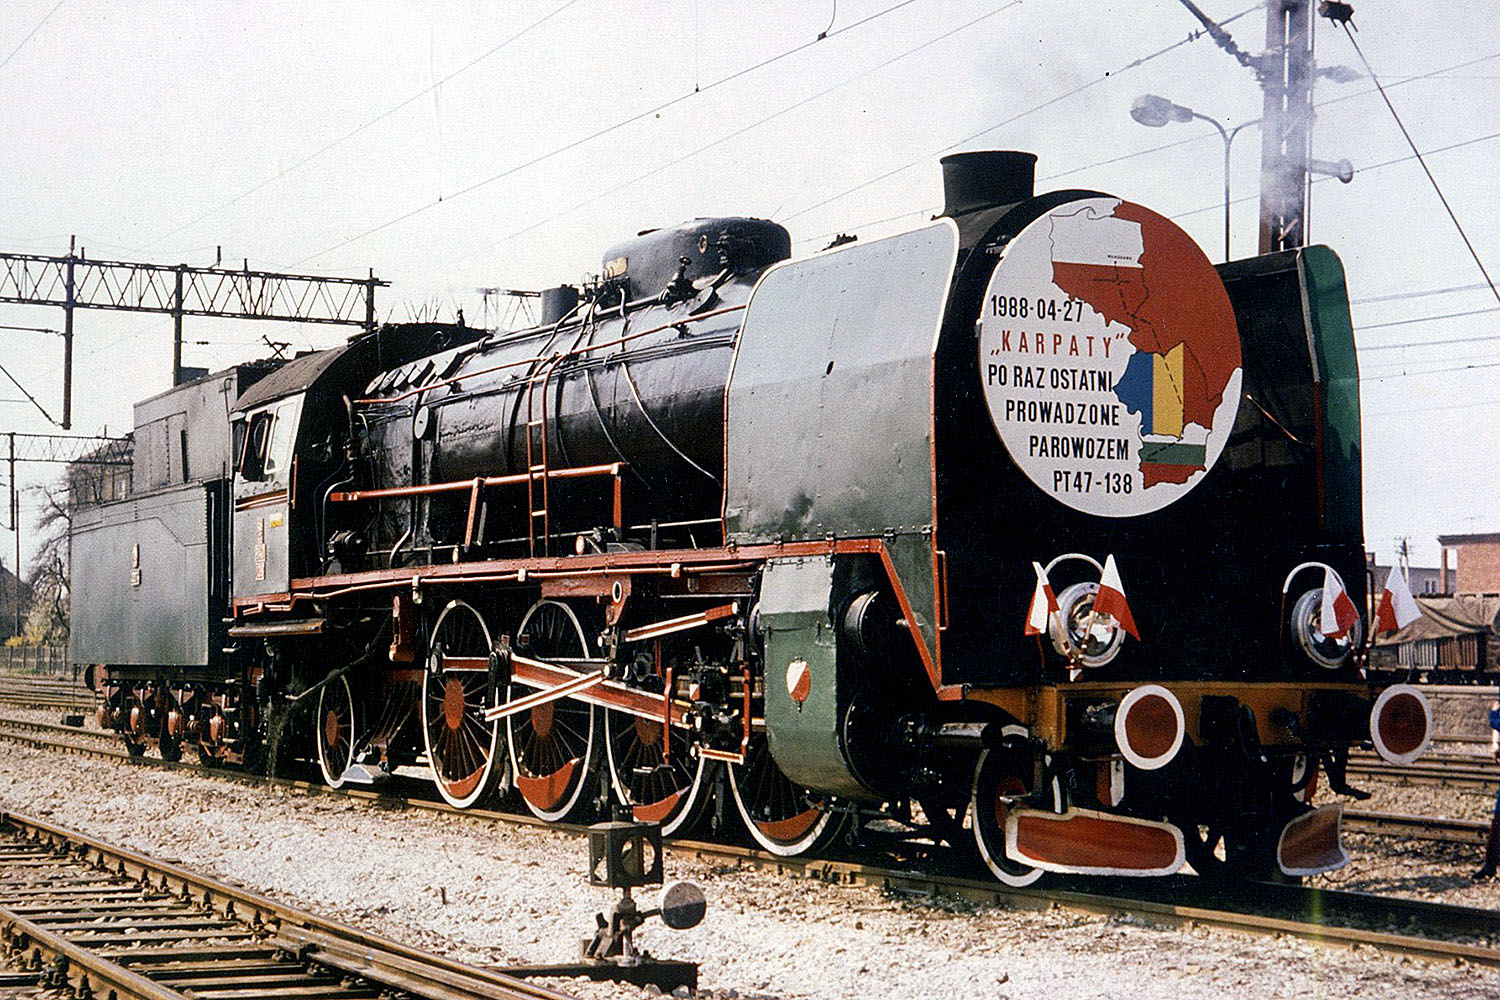 27 kwietnia 1988 r. - międzynarodowy pociąg pośpieszny „Karpaty” po raz ostatni obsługiwany był parowozem Pt47, którego załogę stanowili pracownicy skarżyskiej lokomotywowni / źródło: Muzeum im. Orła Białego w Skarżysku-Kamiennej